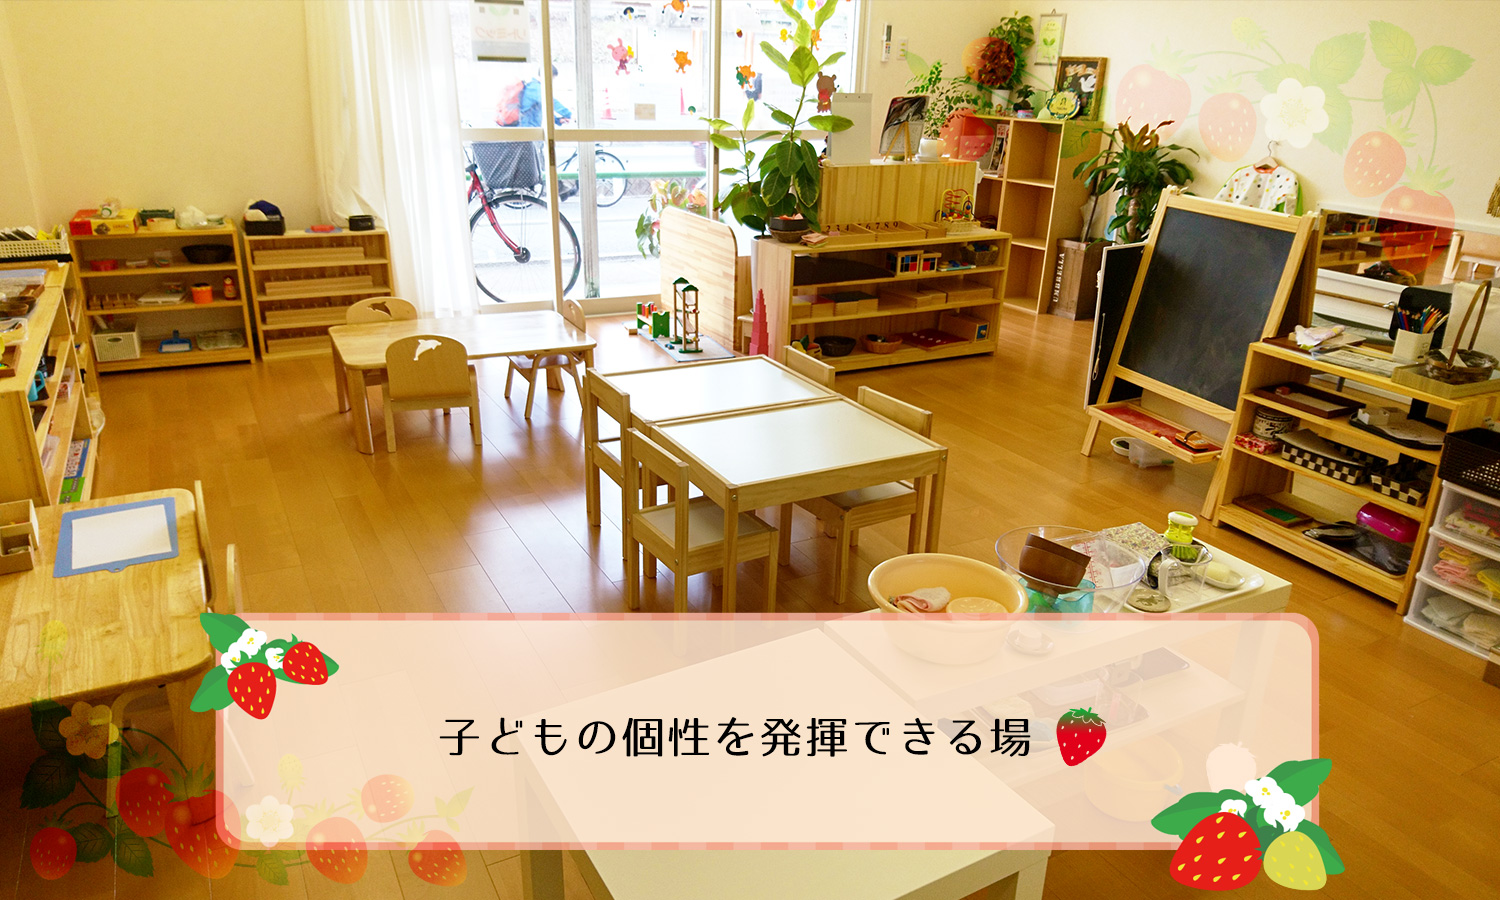 東大阪の幼児教室【こどものいえ のいちご】 | 内装の画像